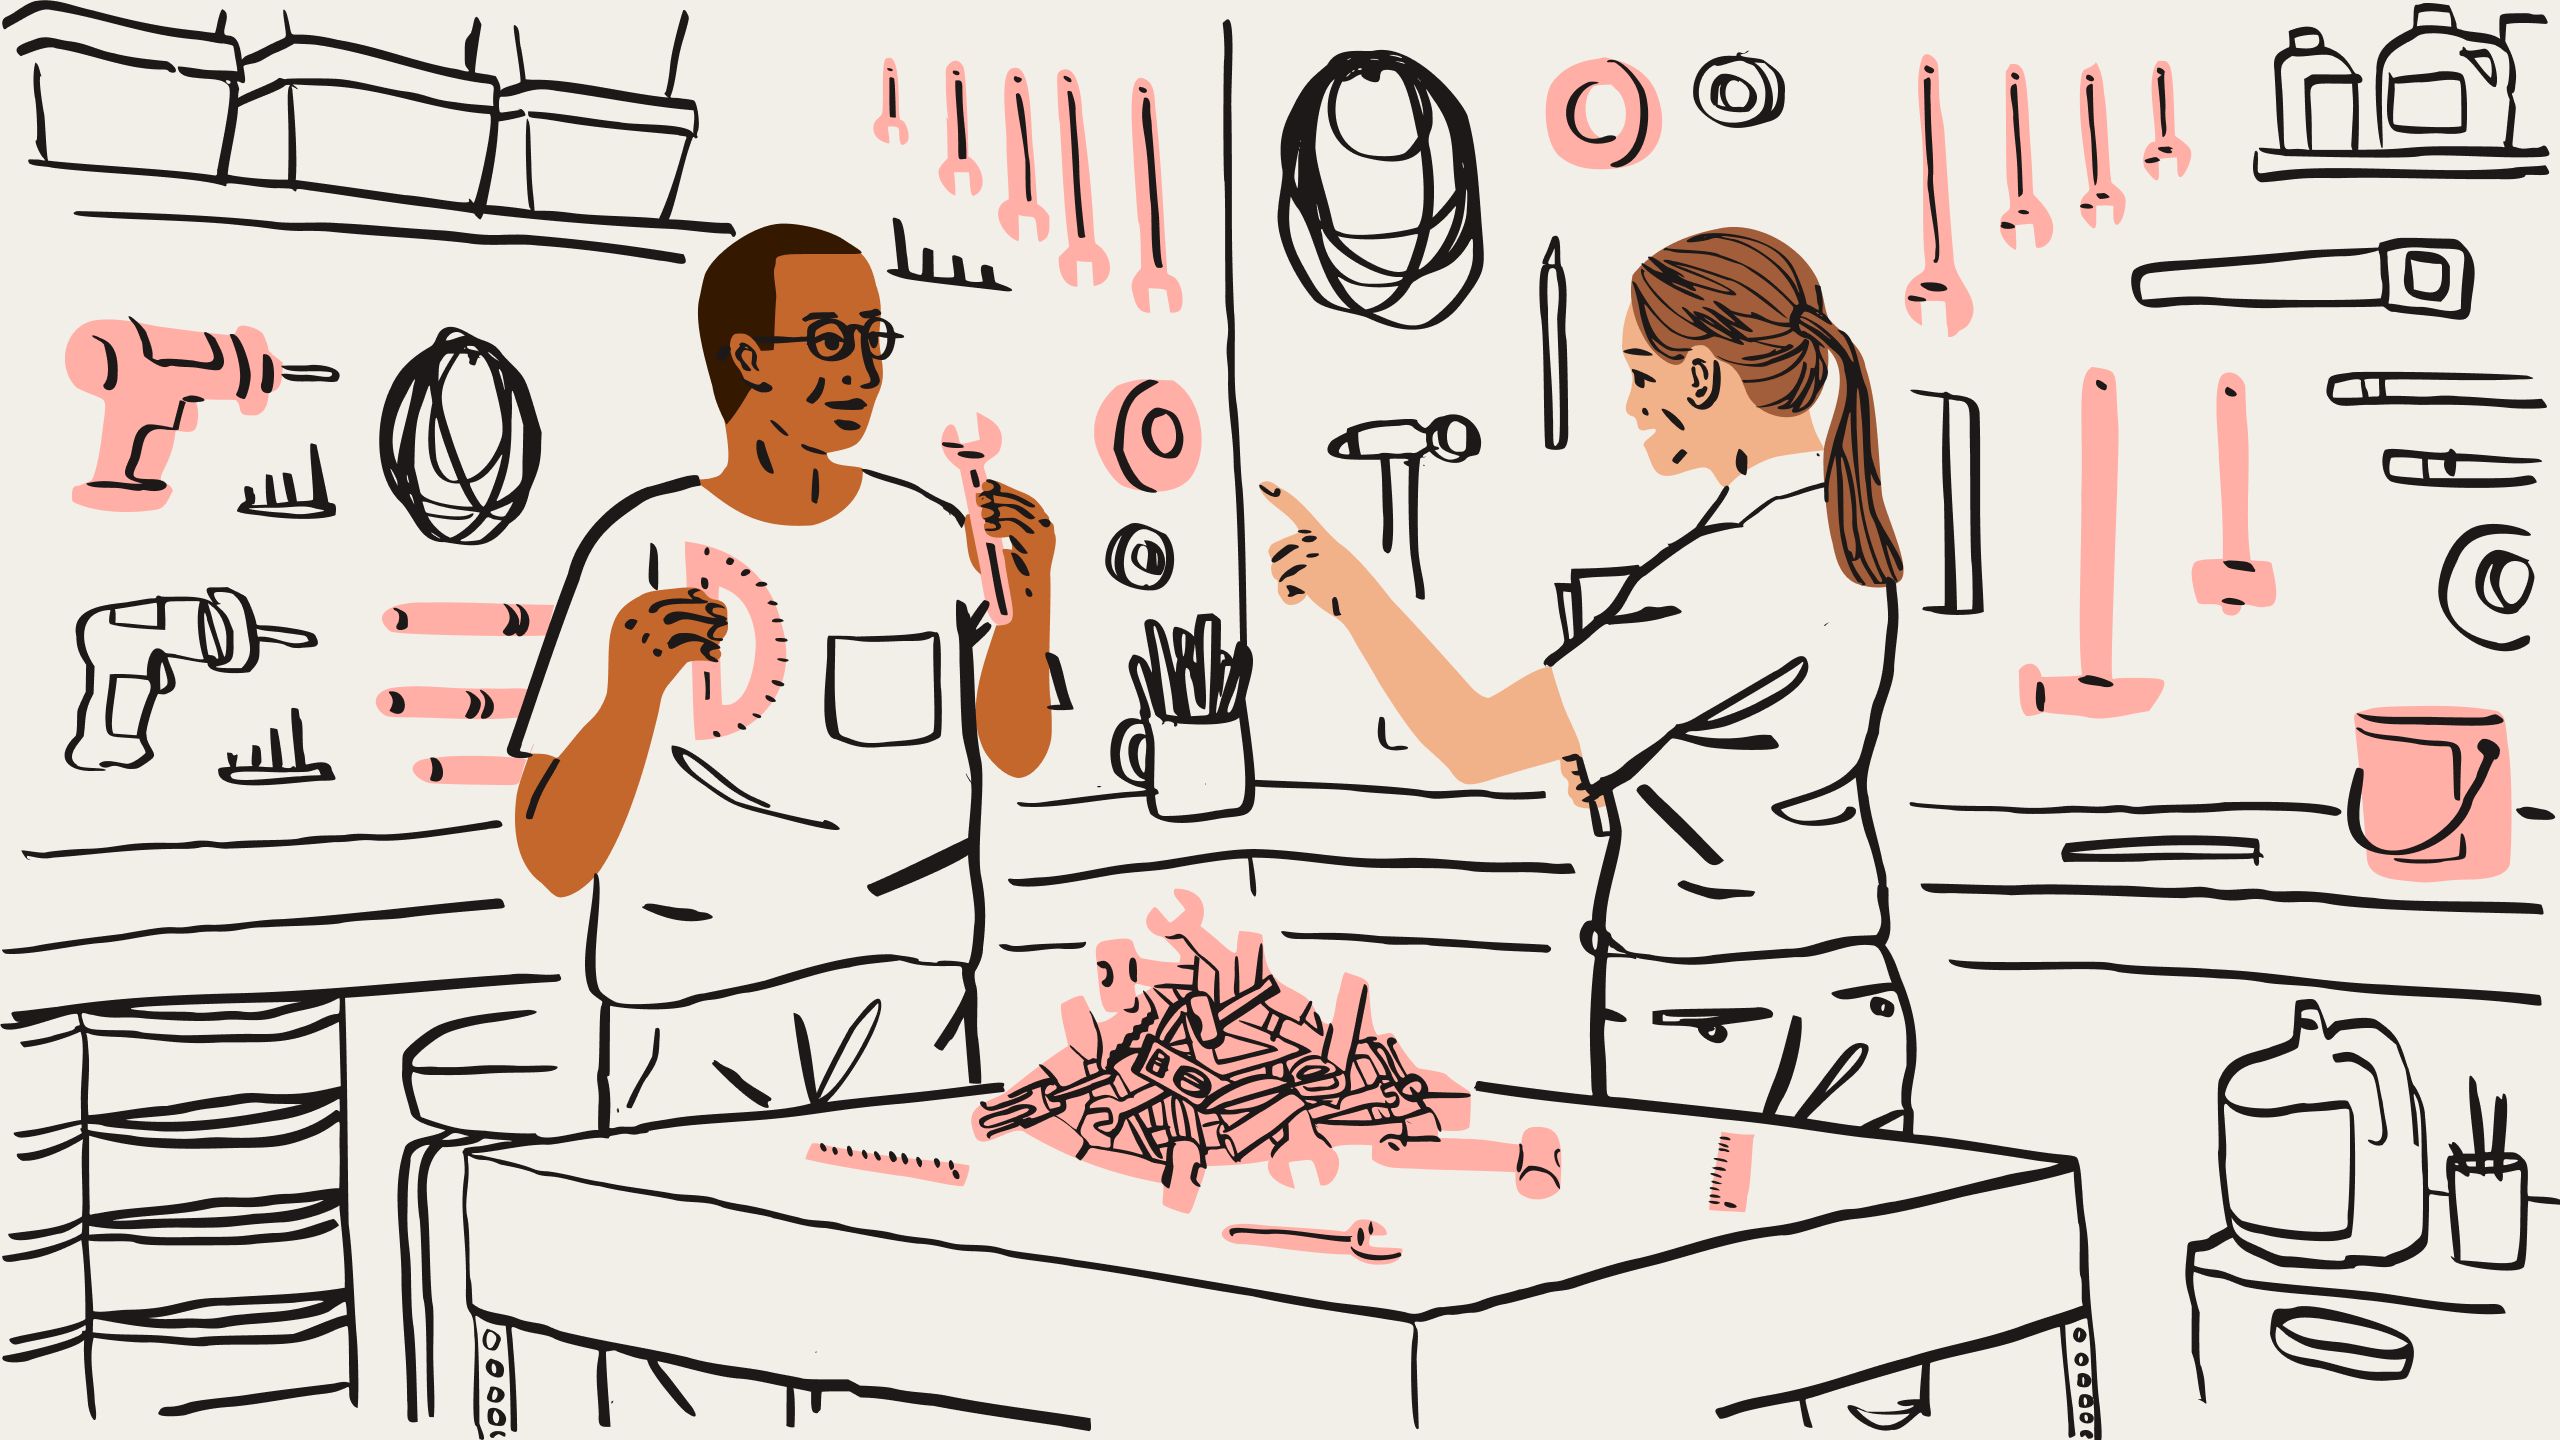 En illustration av två personer som sorterar genom en hög med verktyg, inklusive skiftnycklar och linjaler